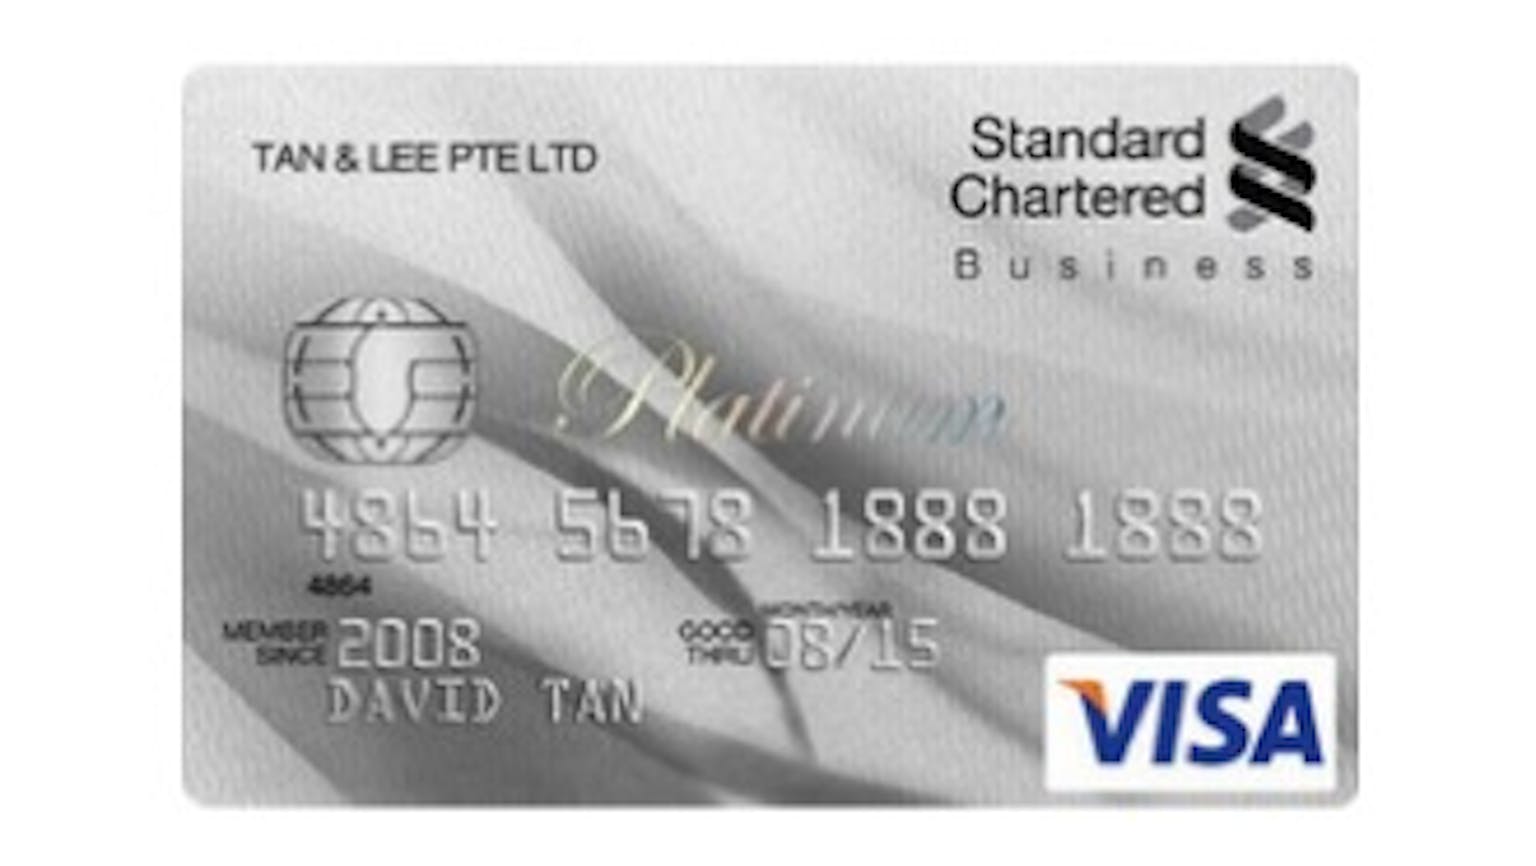 Standard Chartered Business Platinum Card